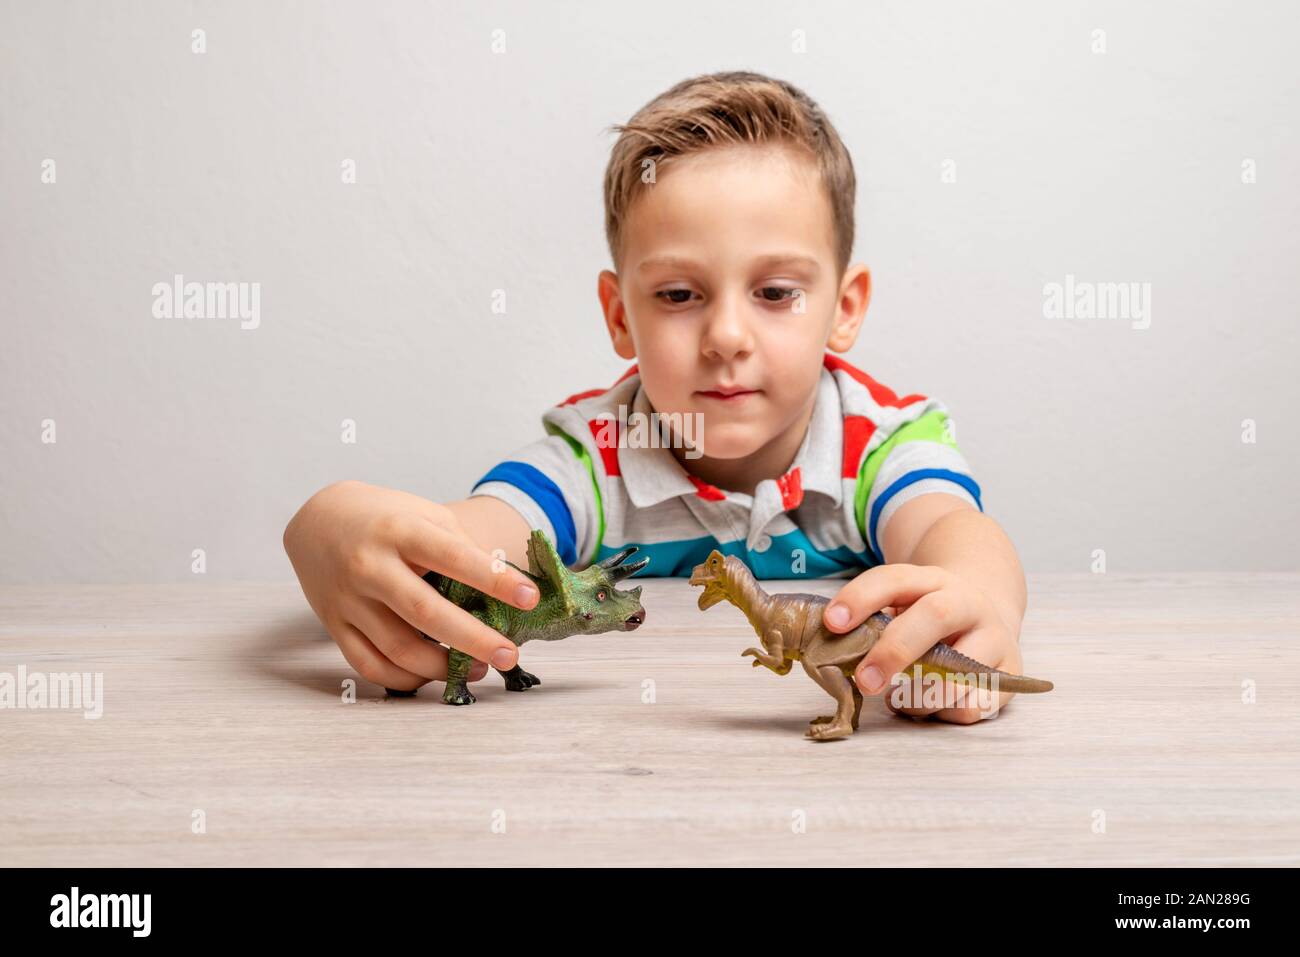 Junge holding Dinosaurier Spielzeug. Konzept der Entwicklung der Aufmerksamkeit bei Kindern durch Spiel Stockfoto